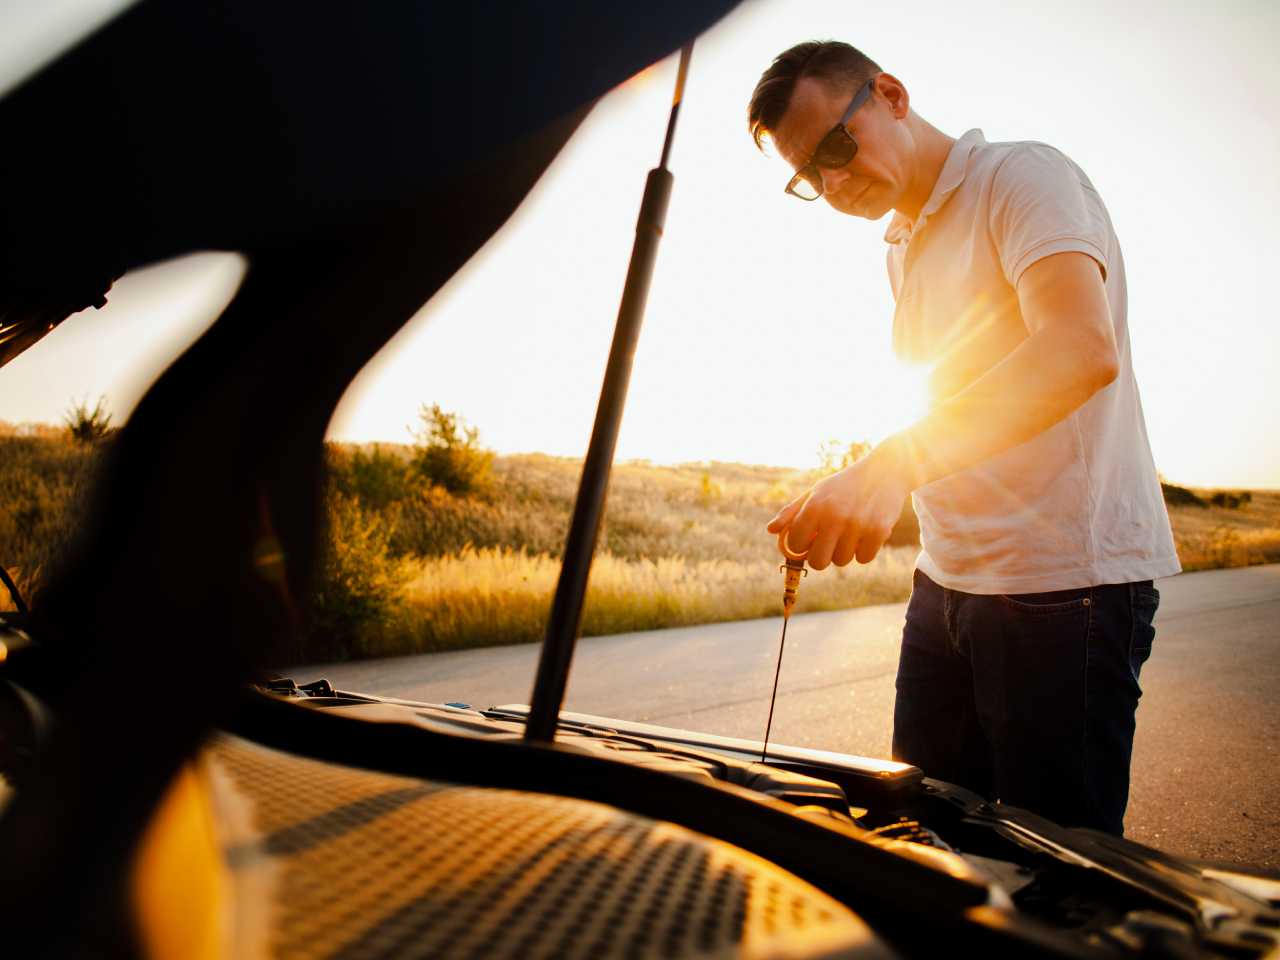 Com as altas temperaturas, a manutenção do carro exige uma série de cuidados para não ter problemas